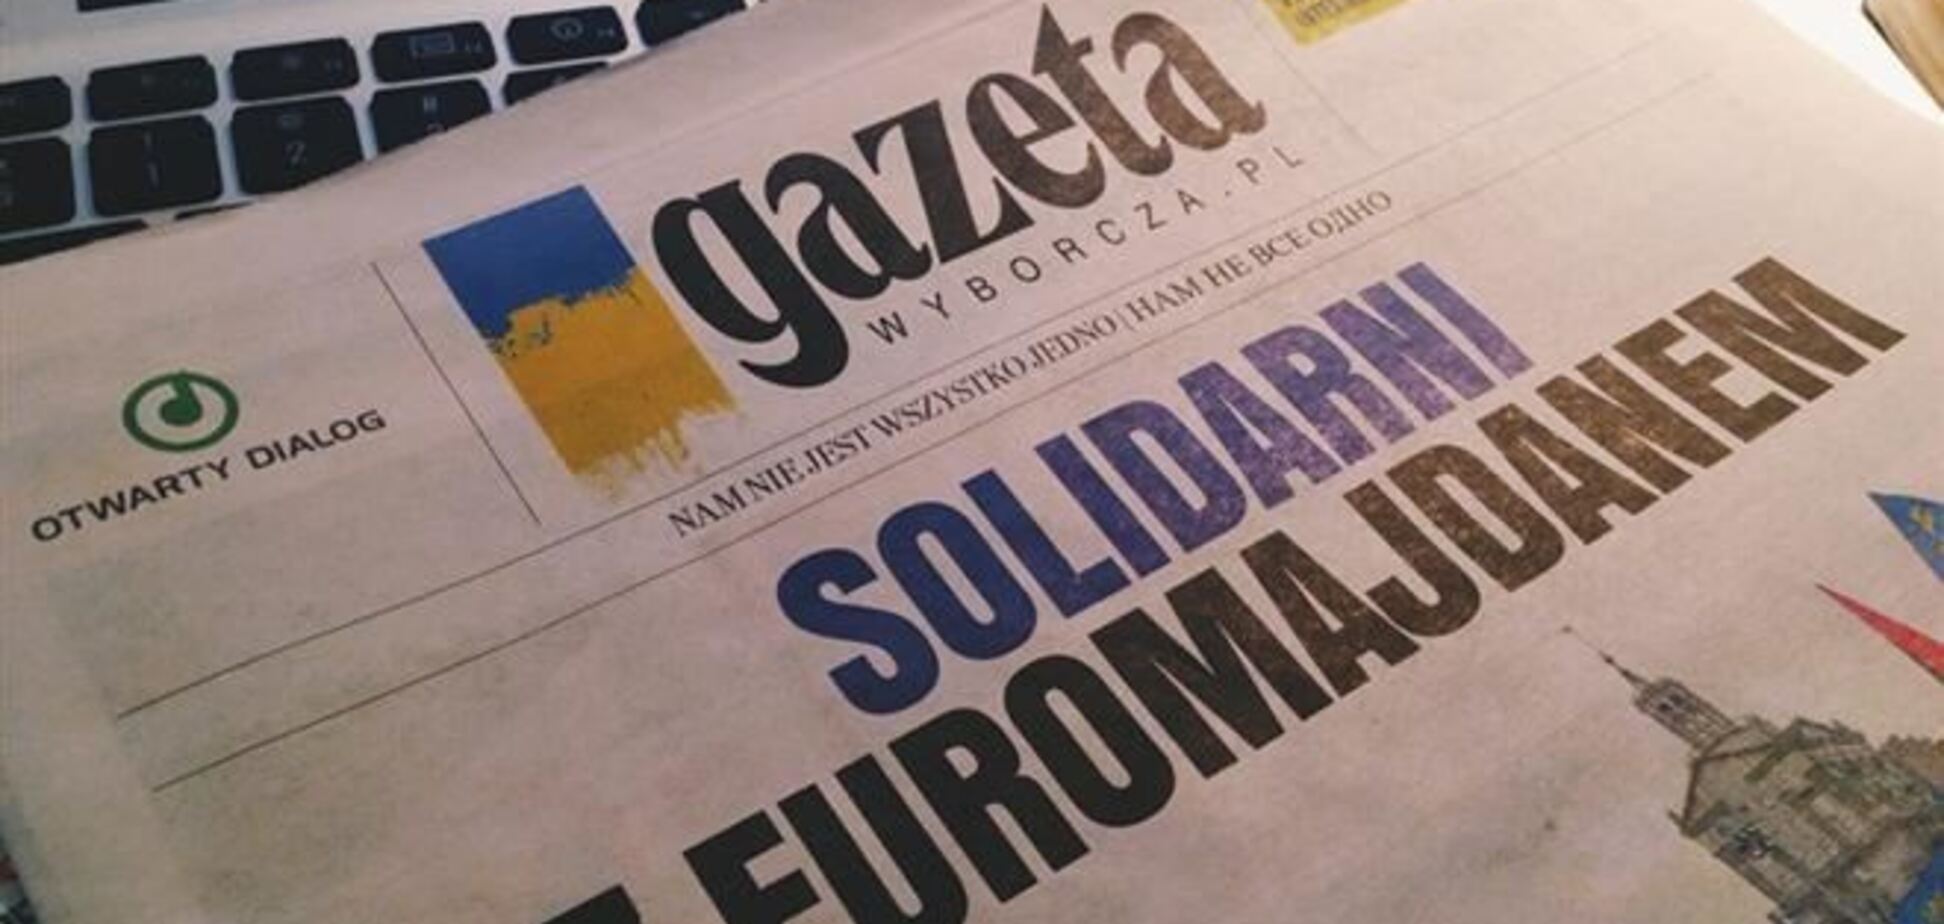 'Газета Выборча' выразила солидарность с Евромайданом